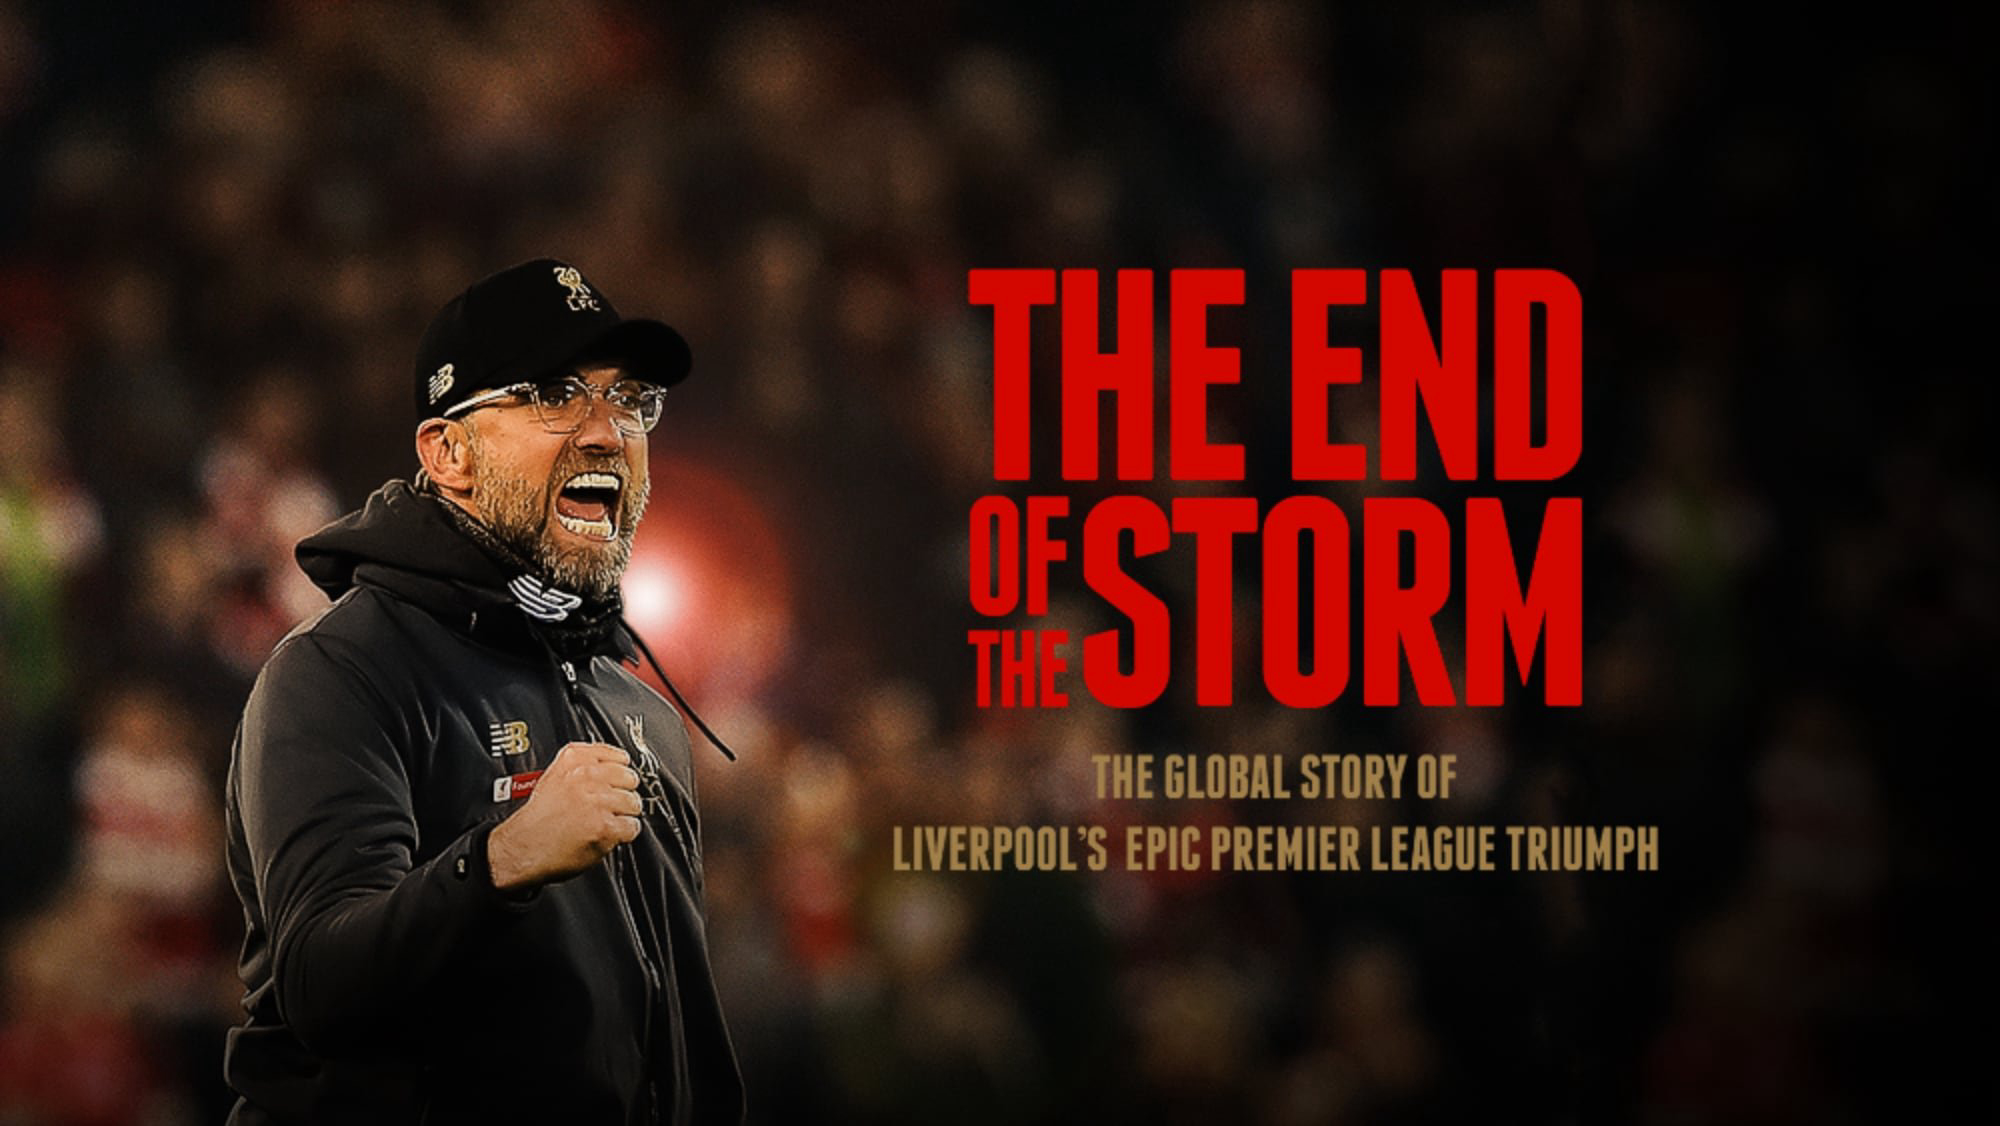 The End of the Storm - The End of the Storm (2020)